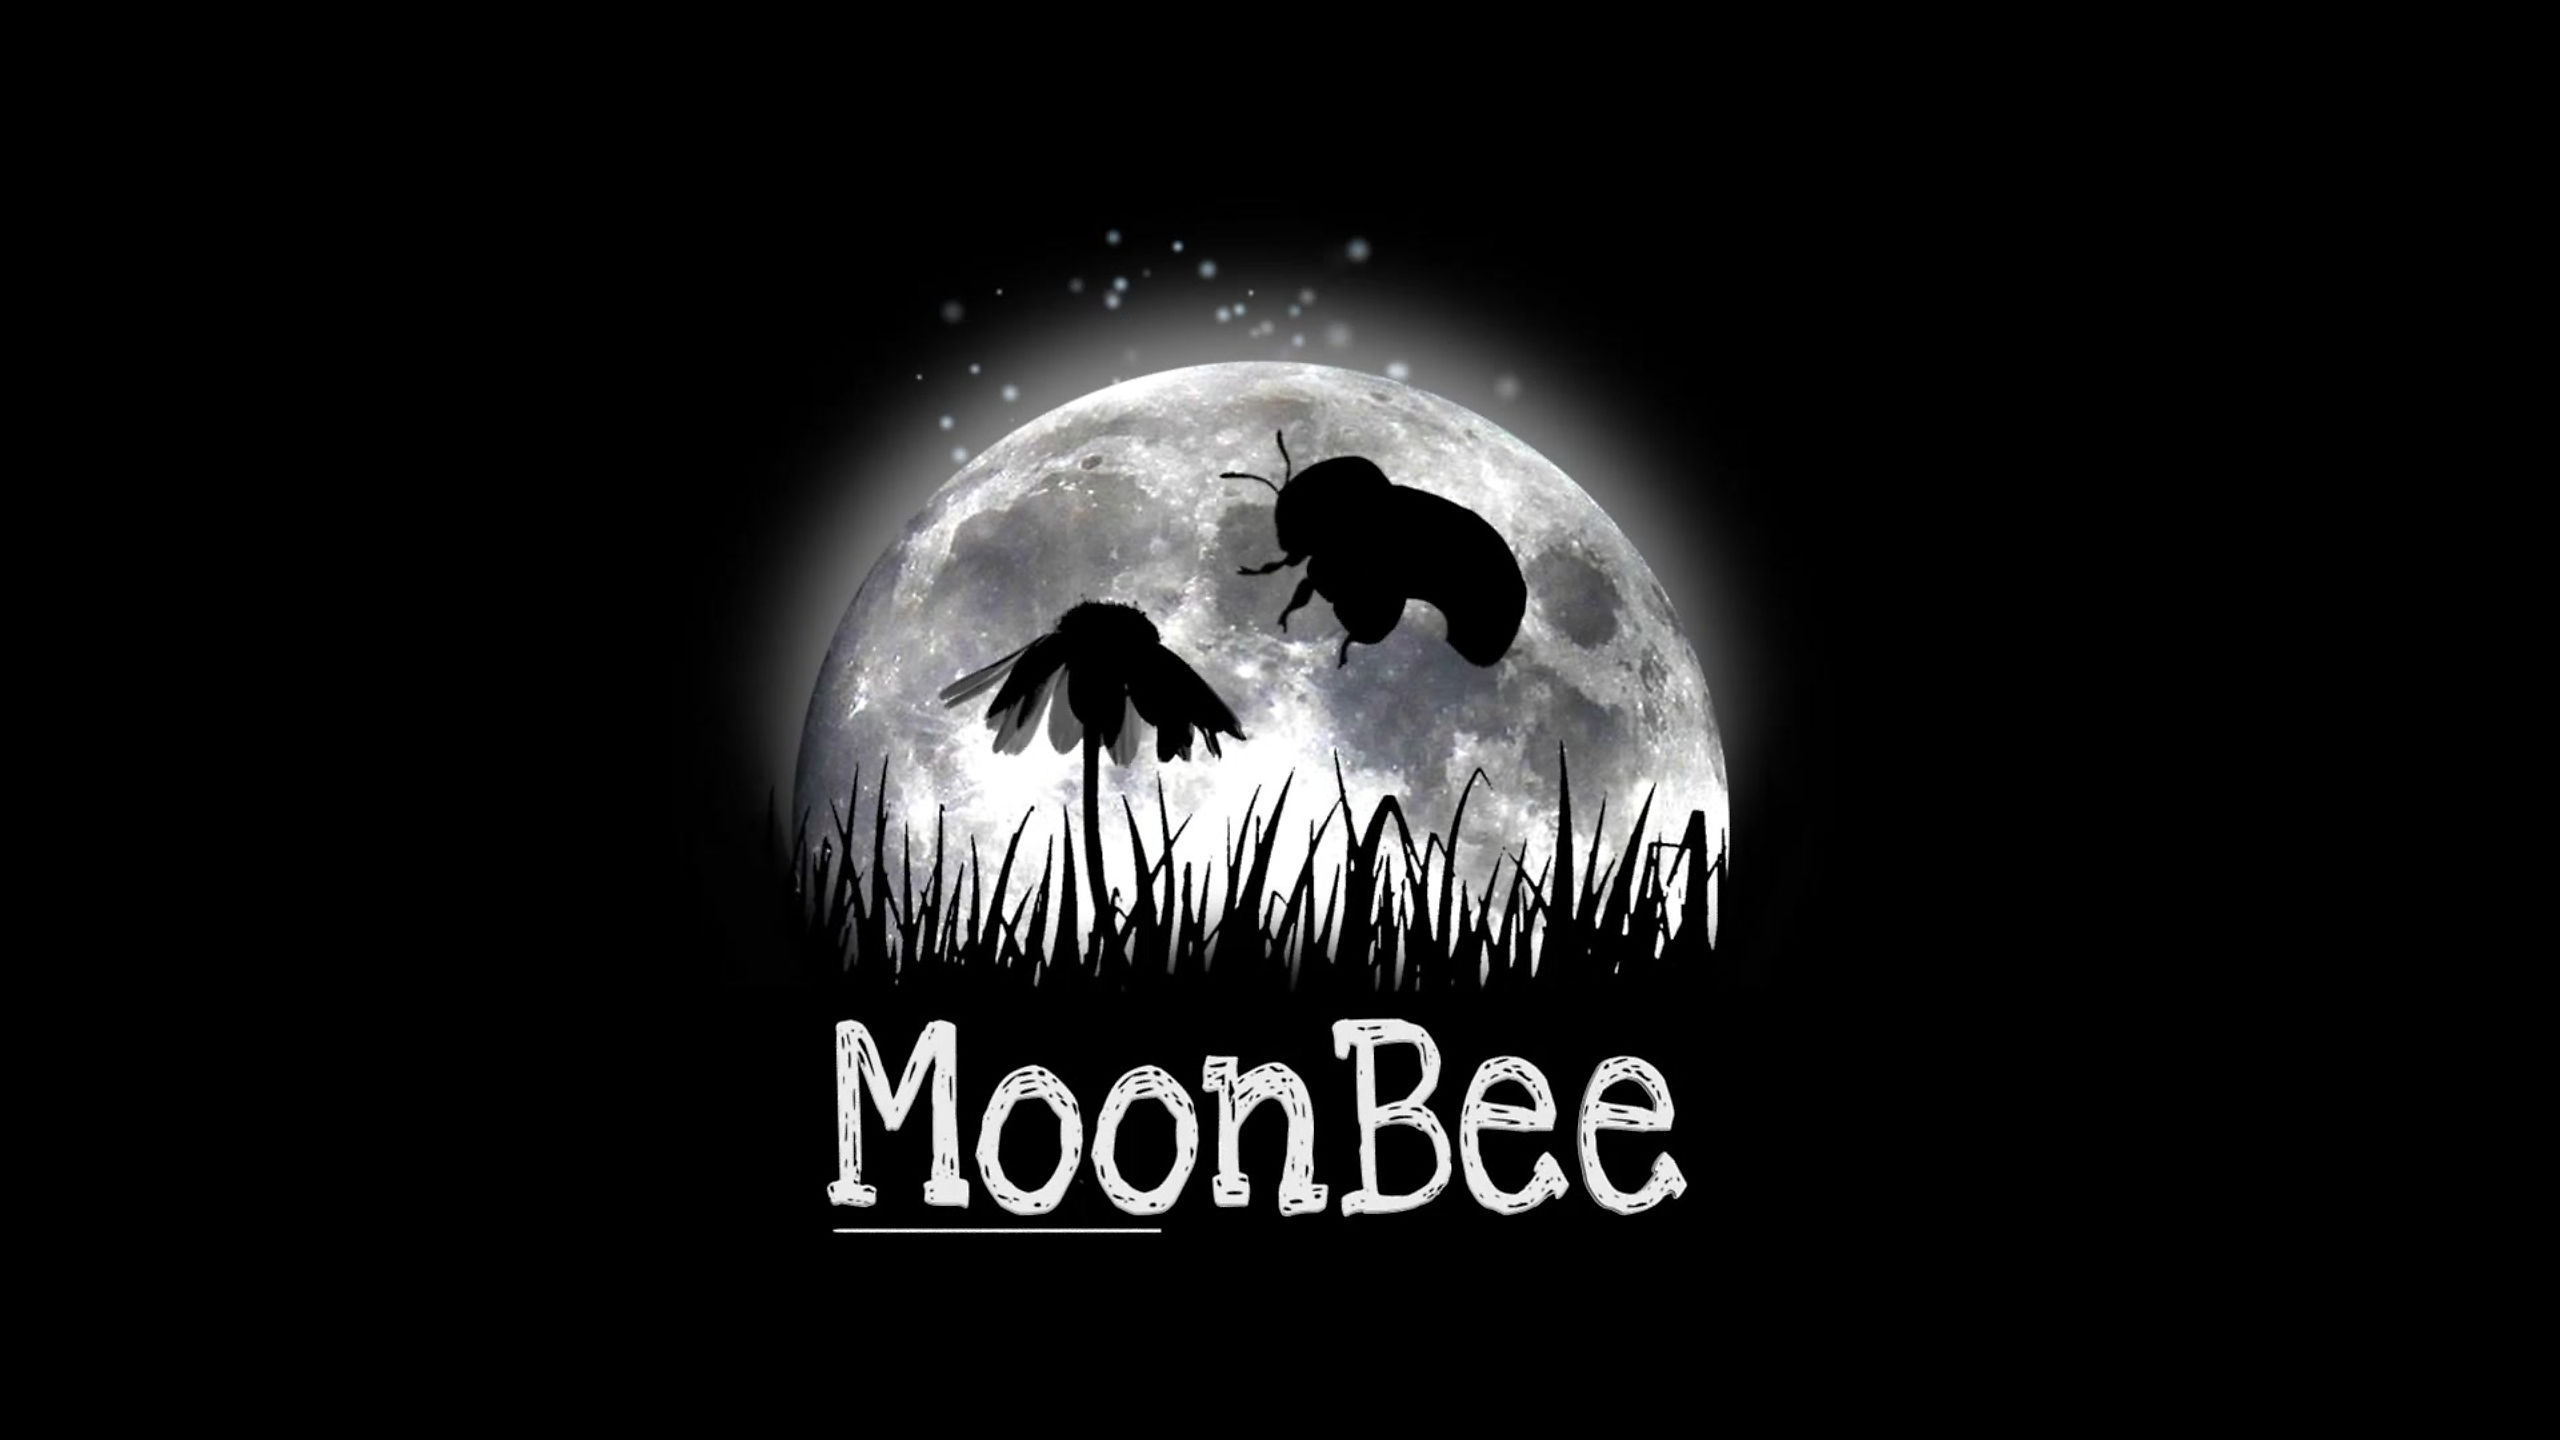 Moonbee anim 3d